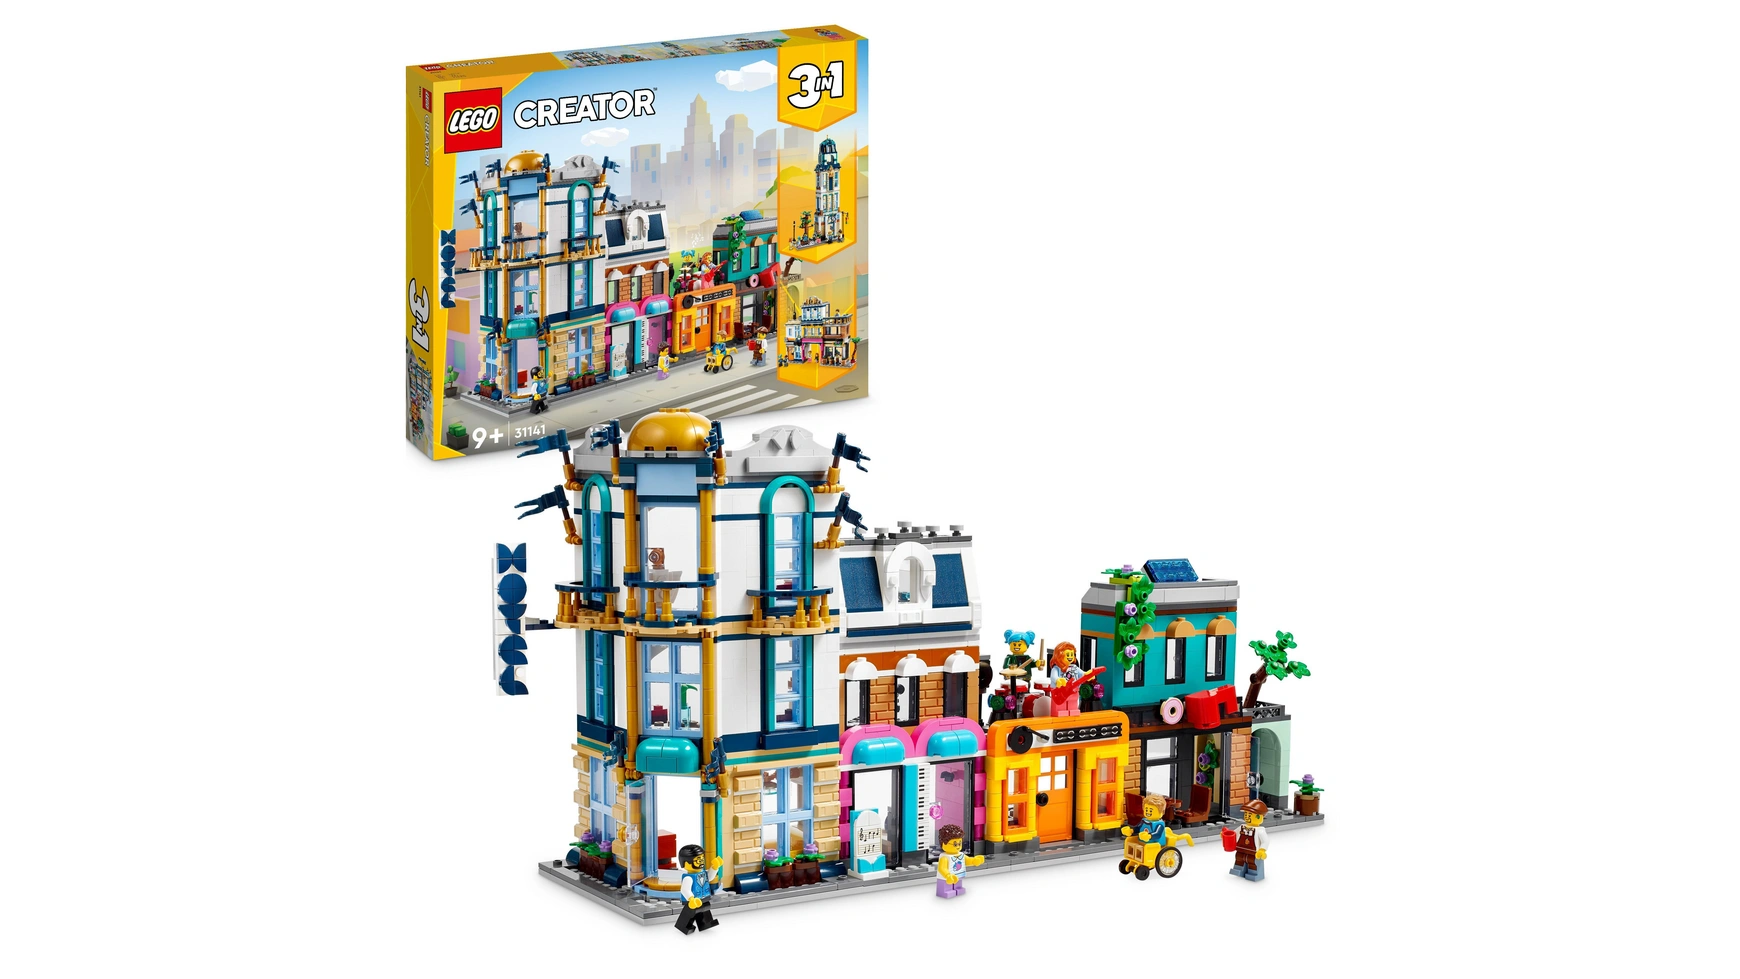 Lego Creator 3-в-1 Main Street, модельный набор со множеством зданий